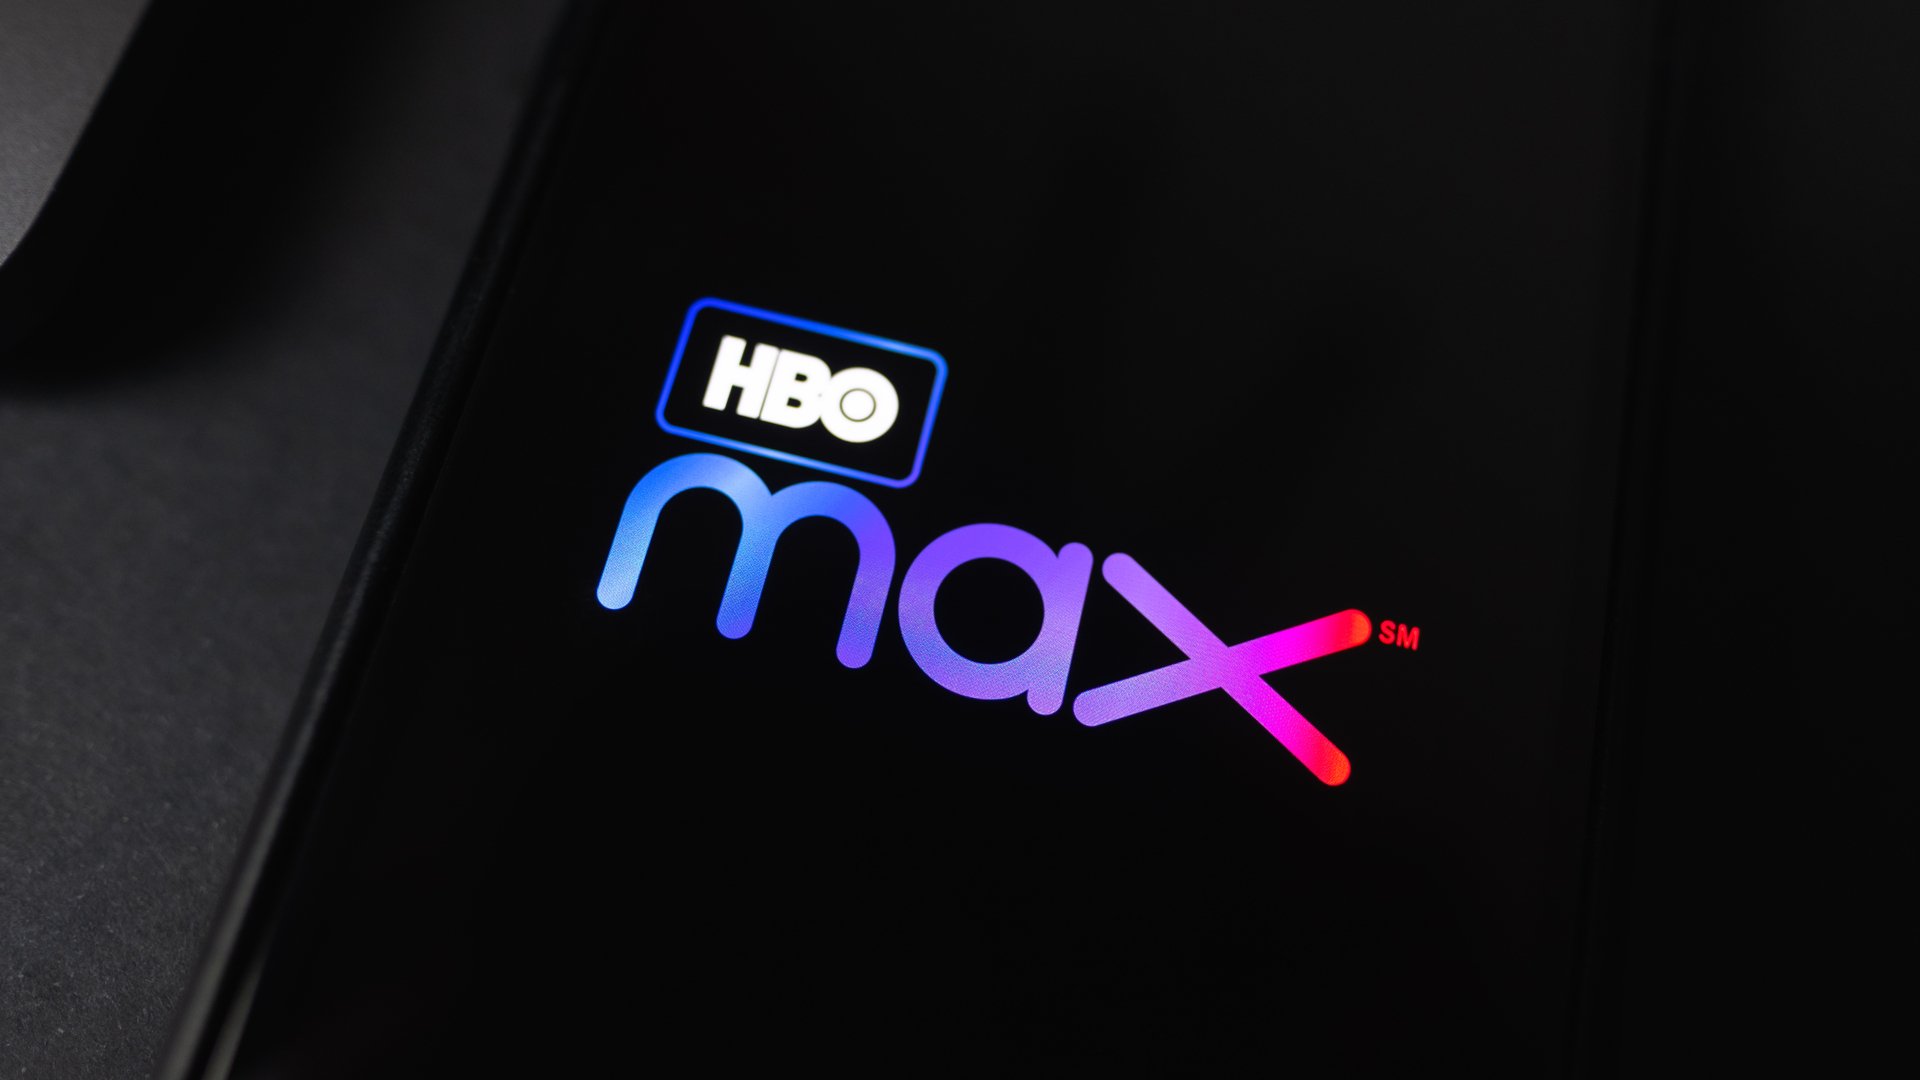 HBO Max tem promoção de Black Friday a R$ 9,90; saiba como assinar